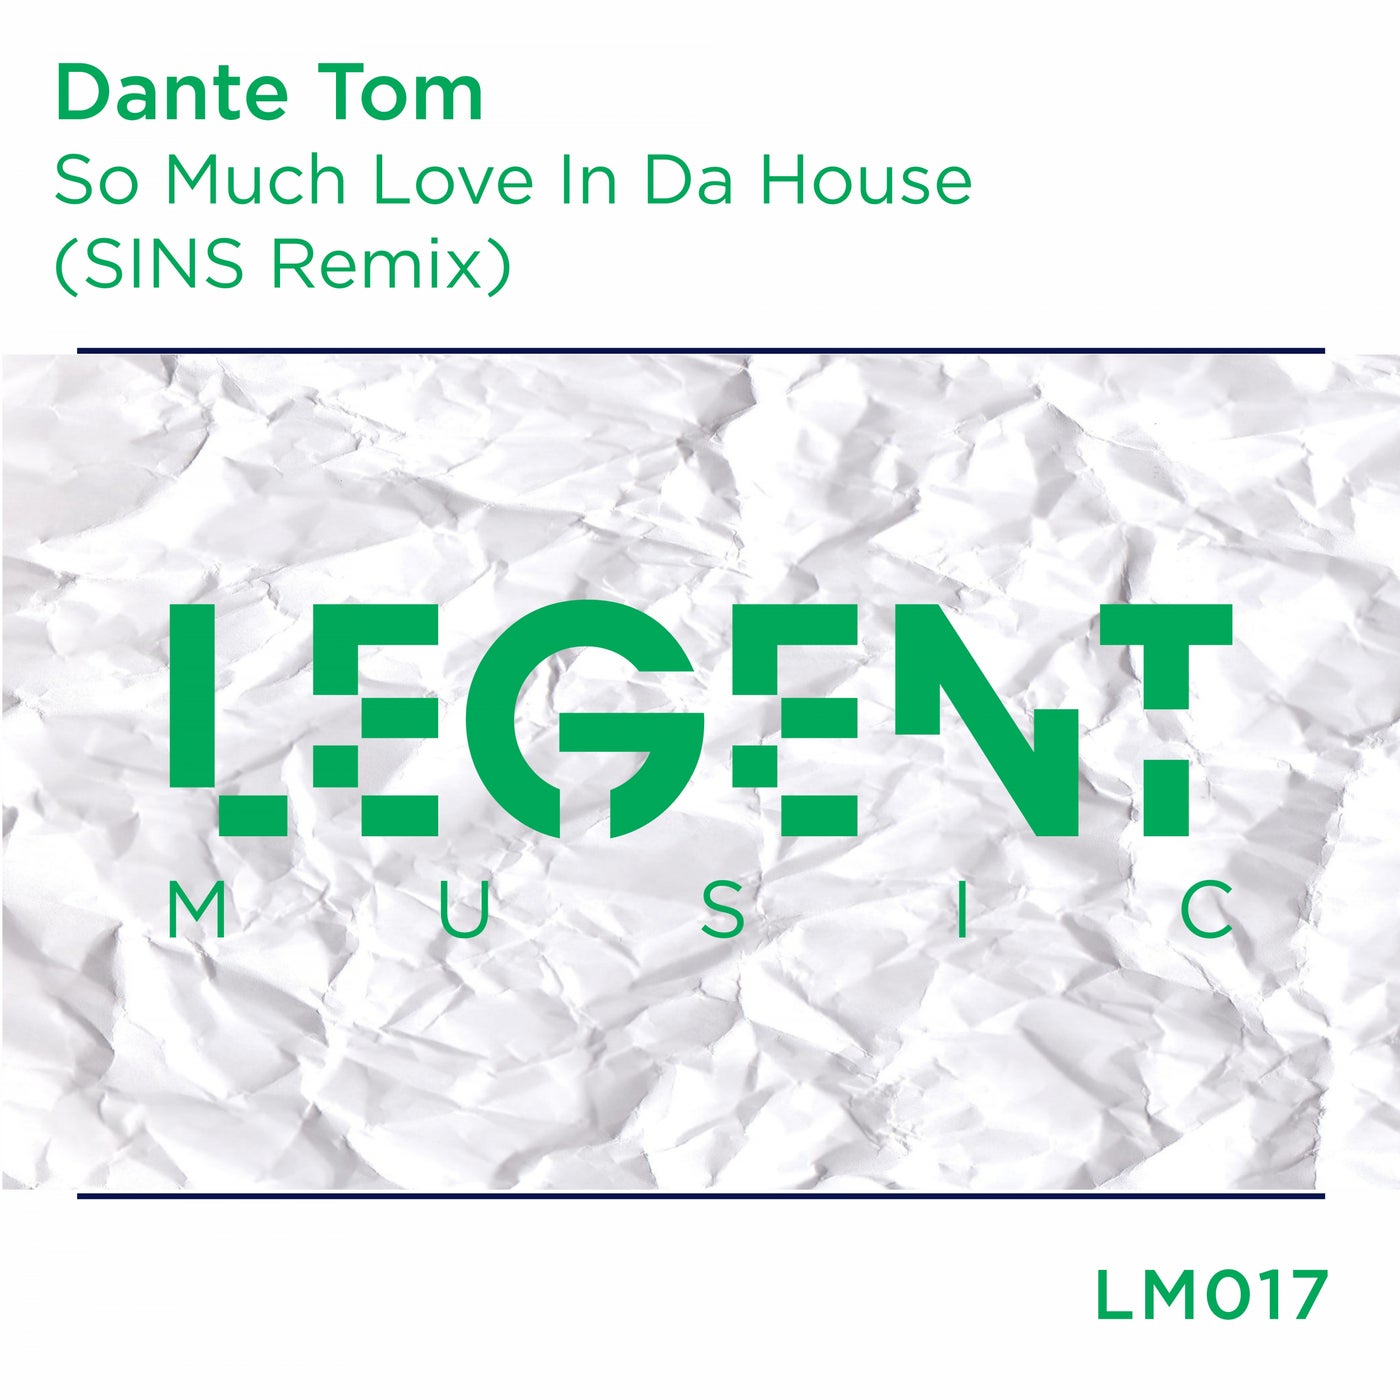 So Much Love In Da House (SINS Remix)